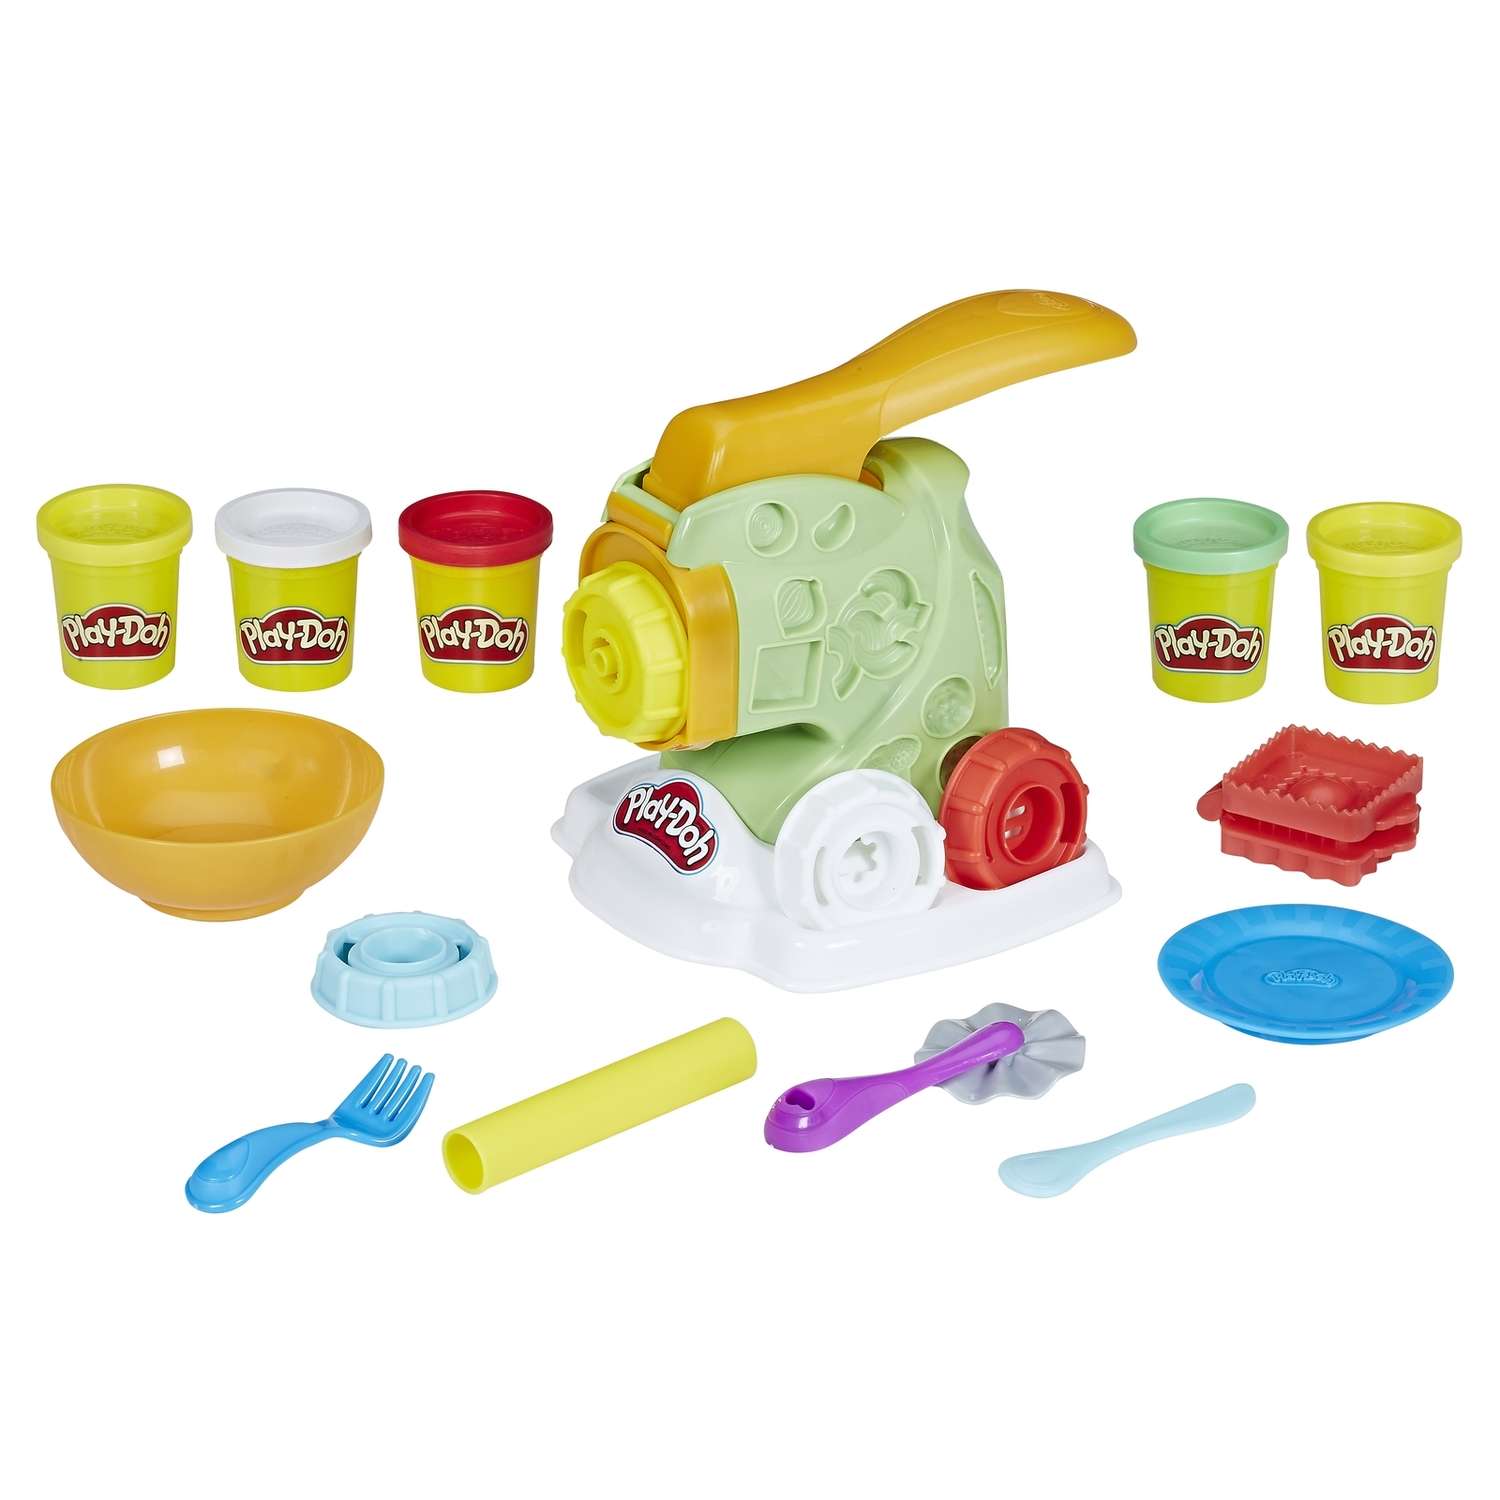 Купить наборы пластилина. Play-Doh e77765l0. Play Doh машинка для лапши. Плей до наборы машинки. Пластилин плей до набор машинки.